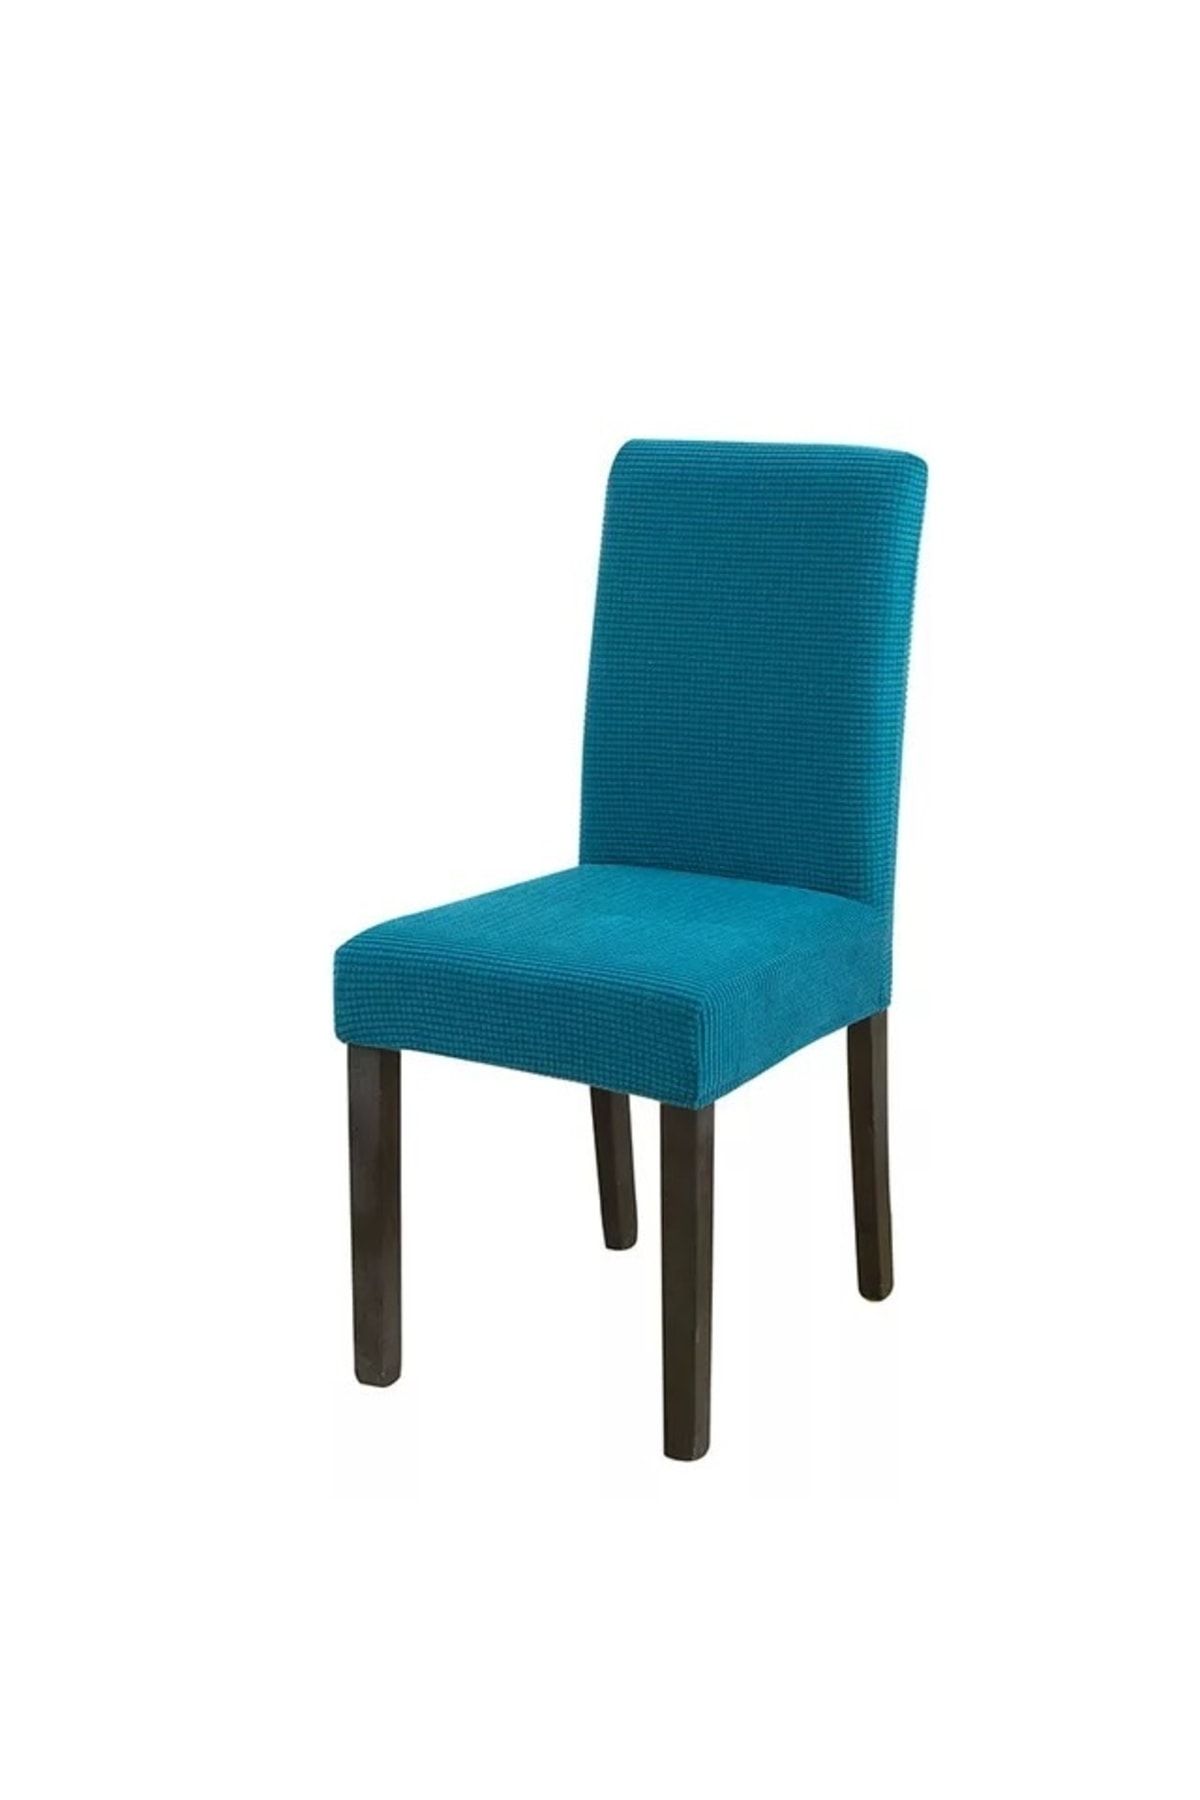 uzhanem 1adet Likrali Sandalye Kılıfı, Sandalye Örtüsü Petrol Mavi Renk Yıkanabilir Piti Kare Desen